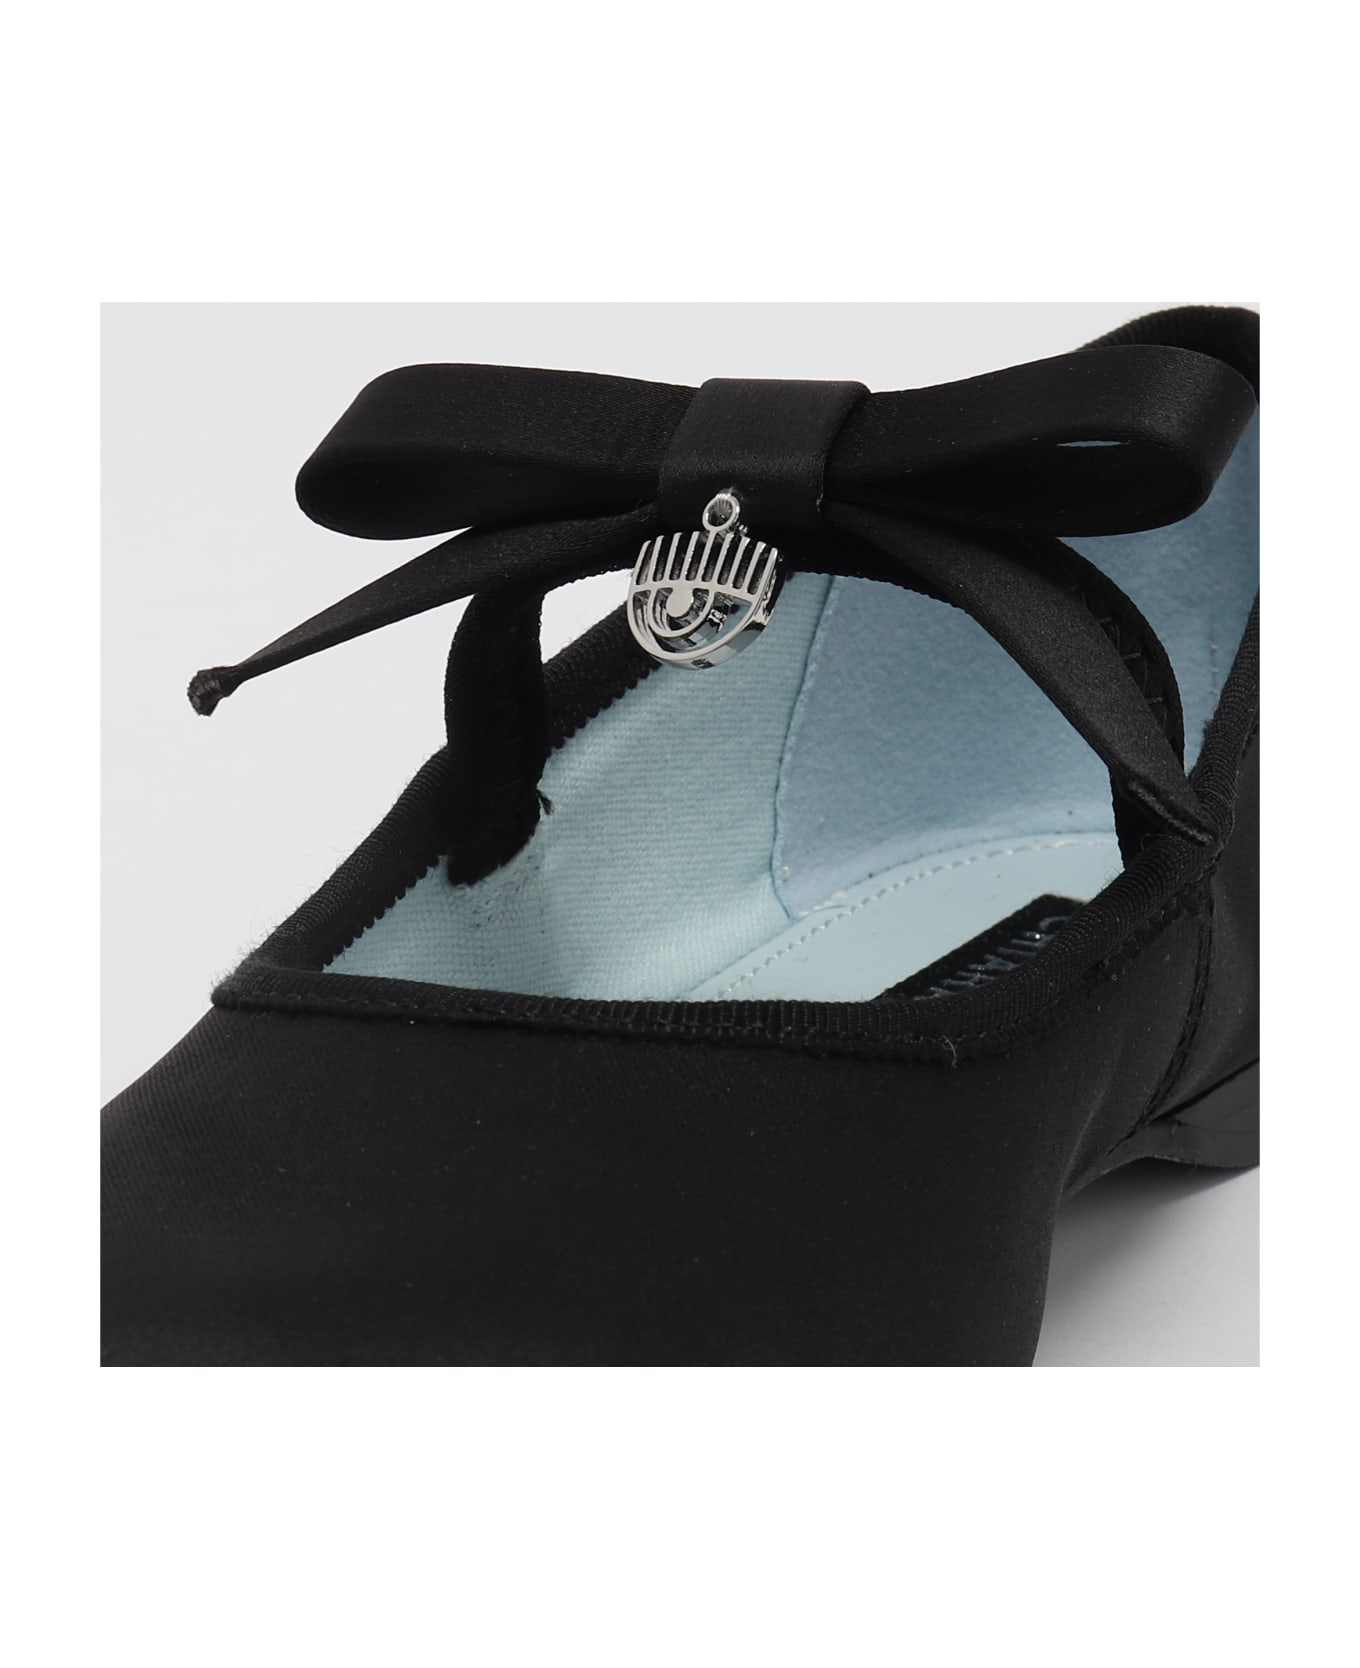 Chiara Ferragni Cf Ballet Shoes Flat Shoes - NERO